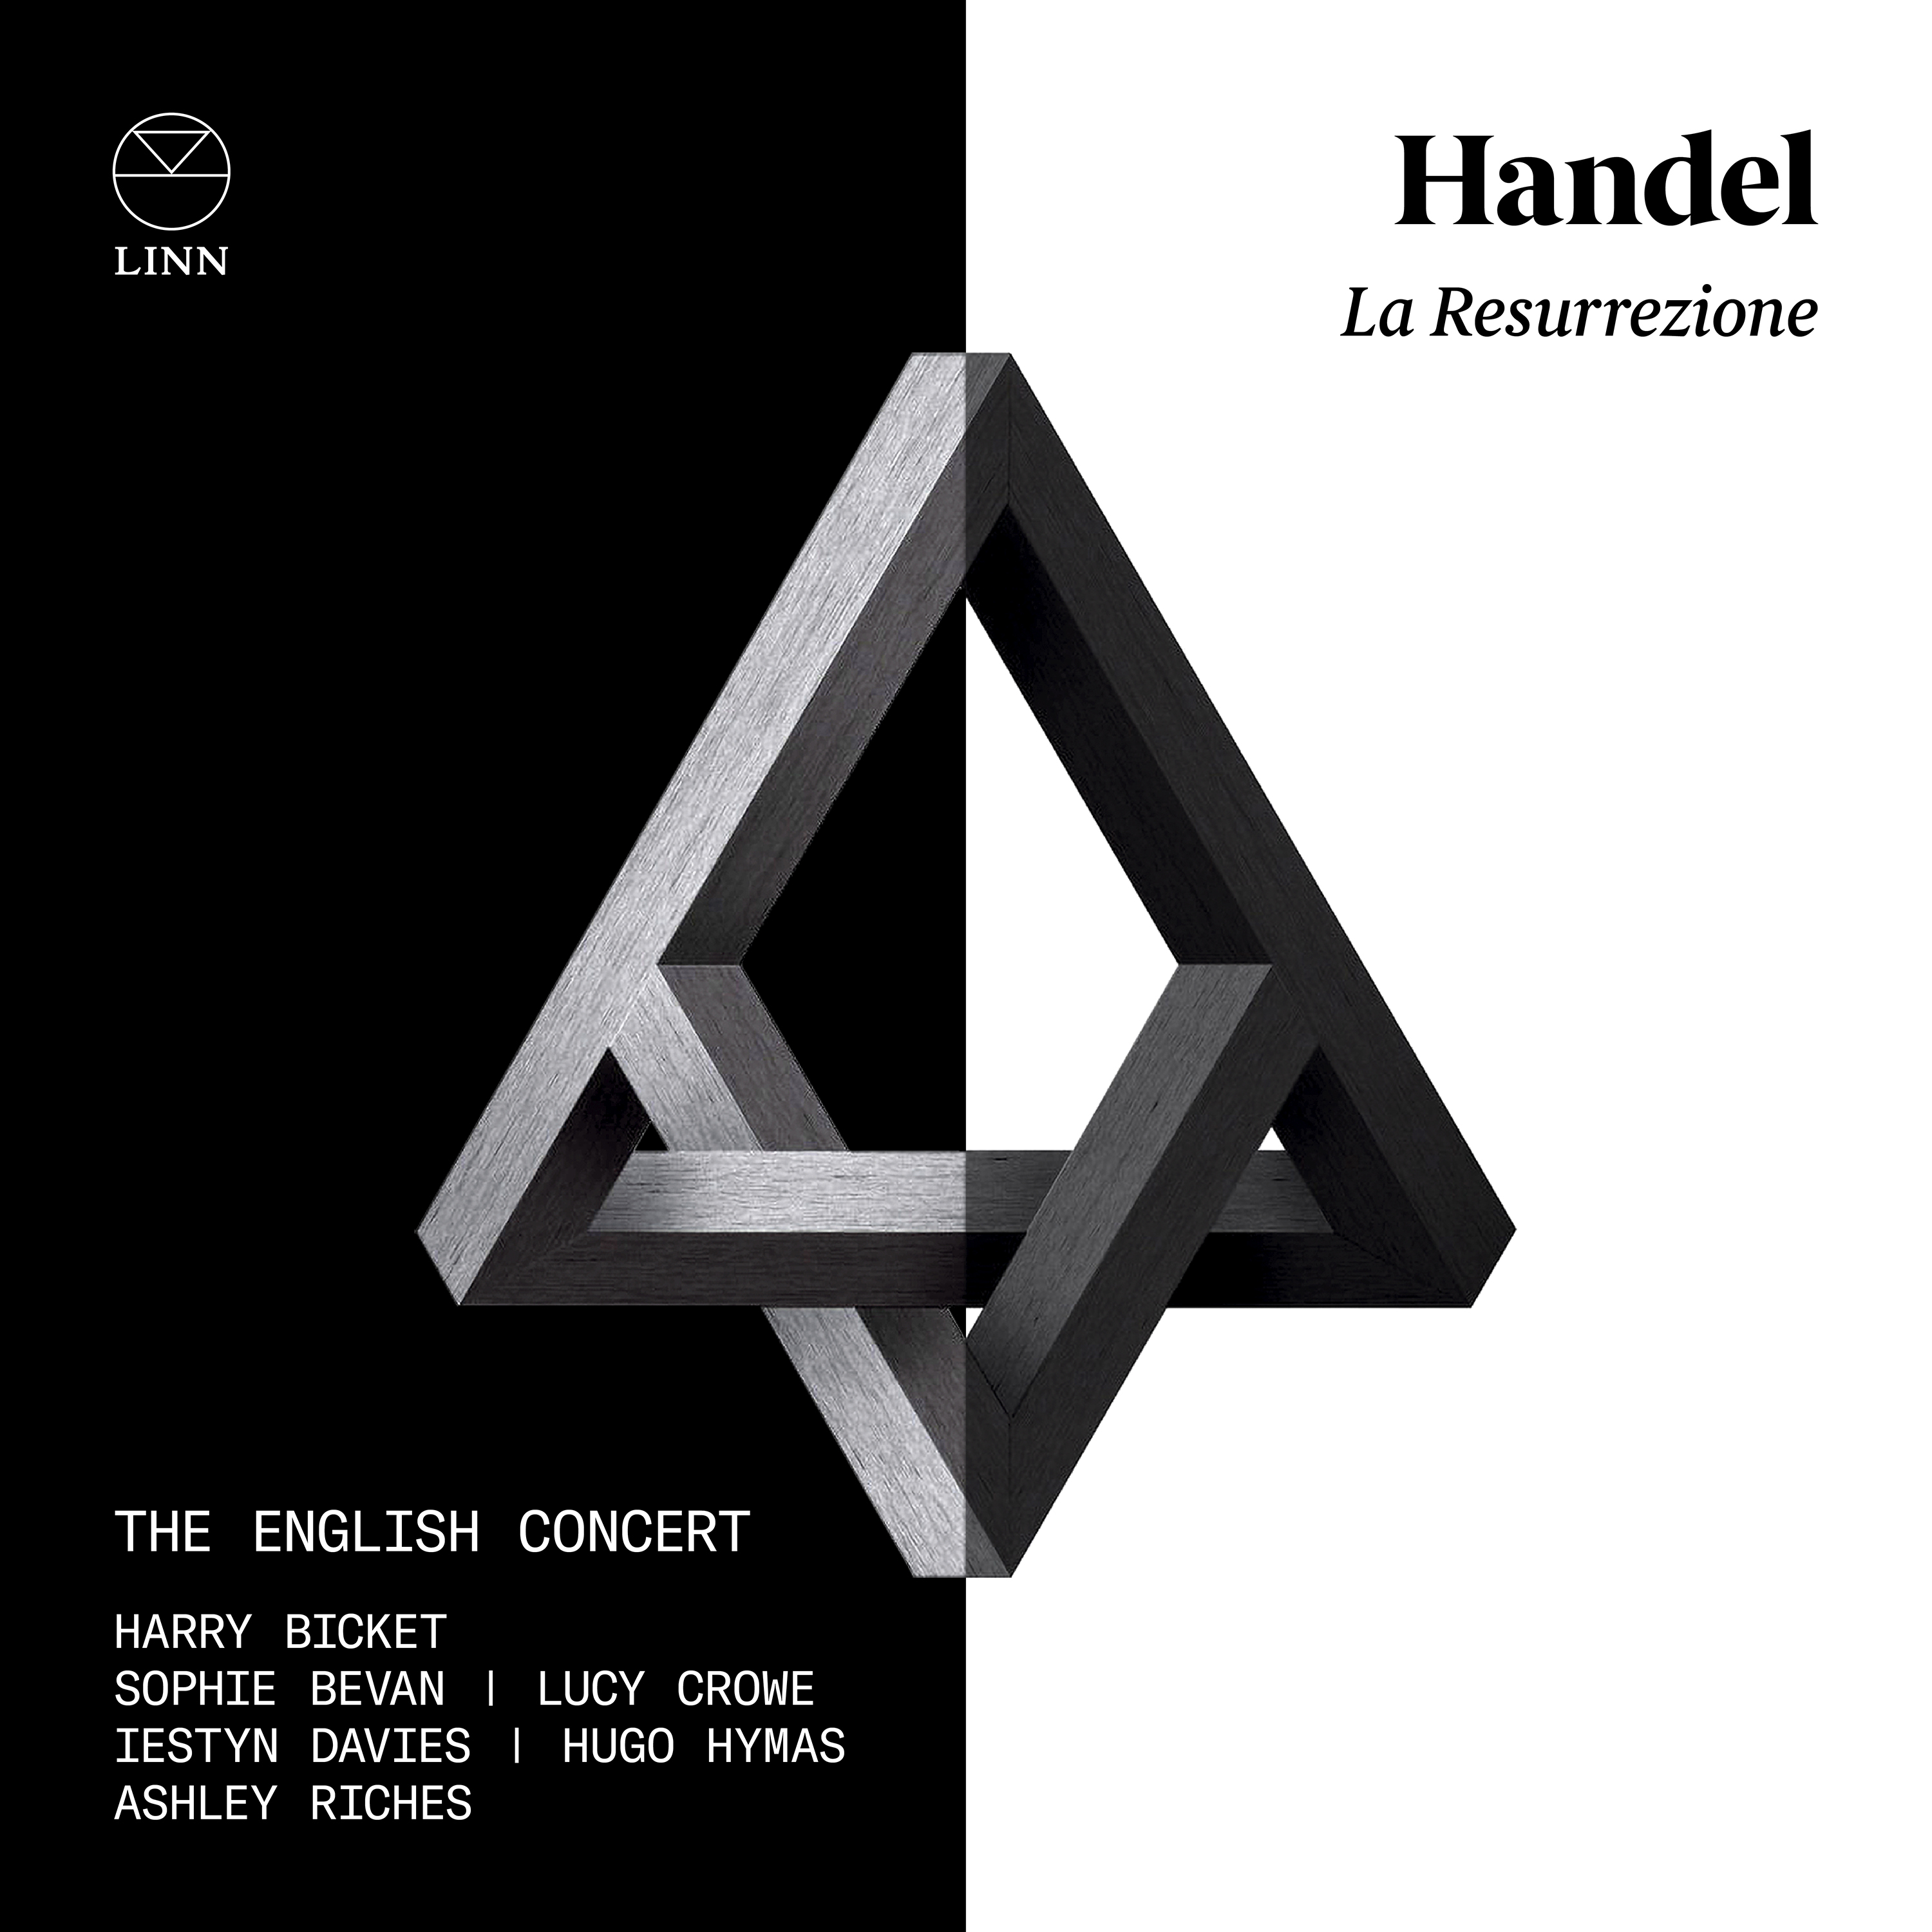 Handel: La Resurrezione - The English Concert